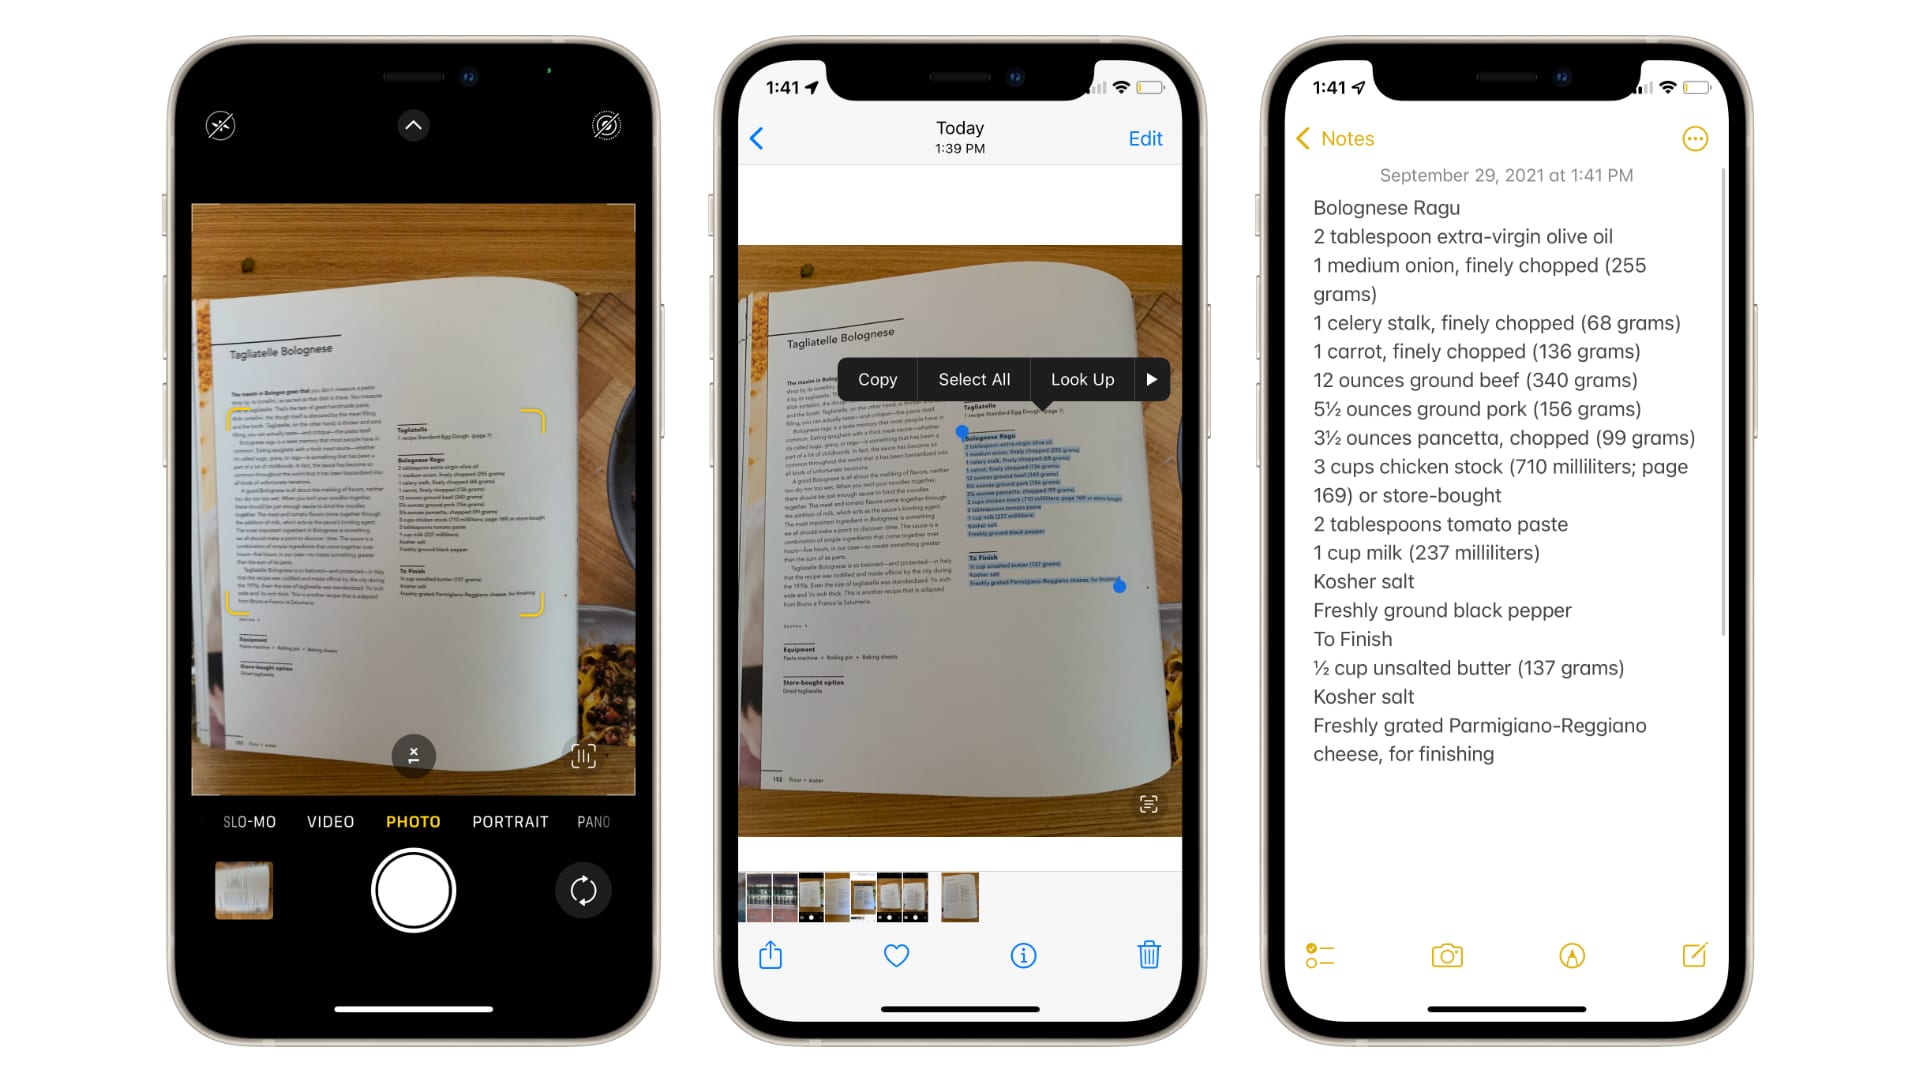 Thủ thuật - Tiện ích - Cách sao chép và cắt dán nội dung văn bản trong ảnh trên iPhone